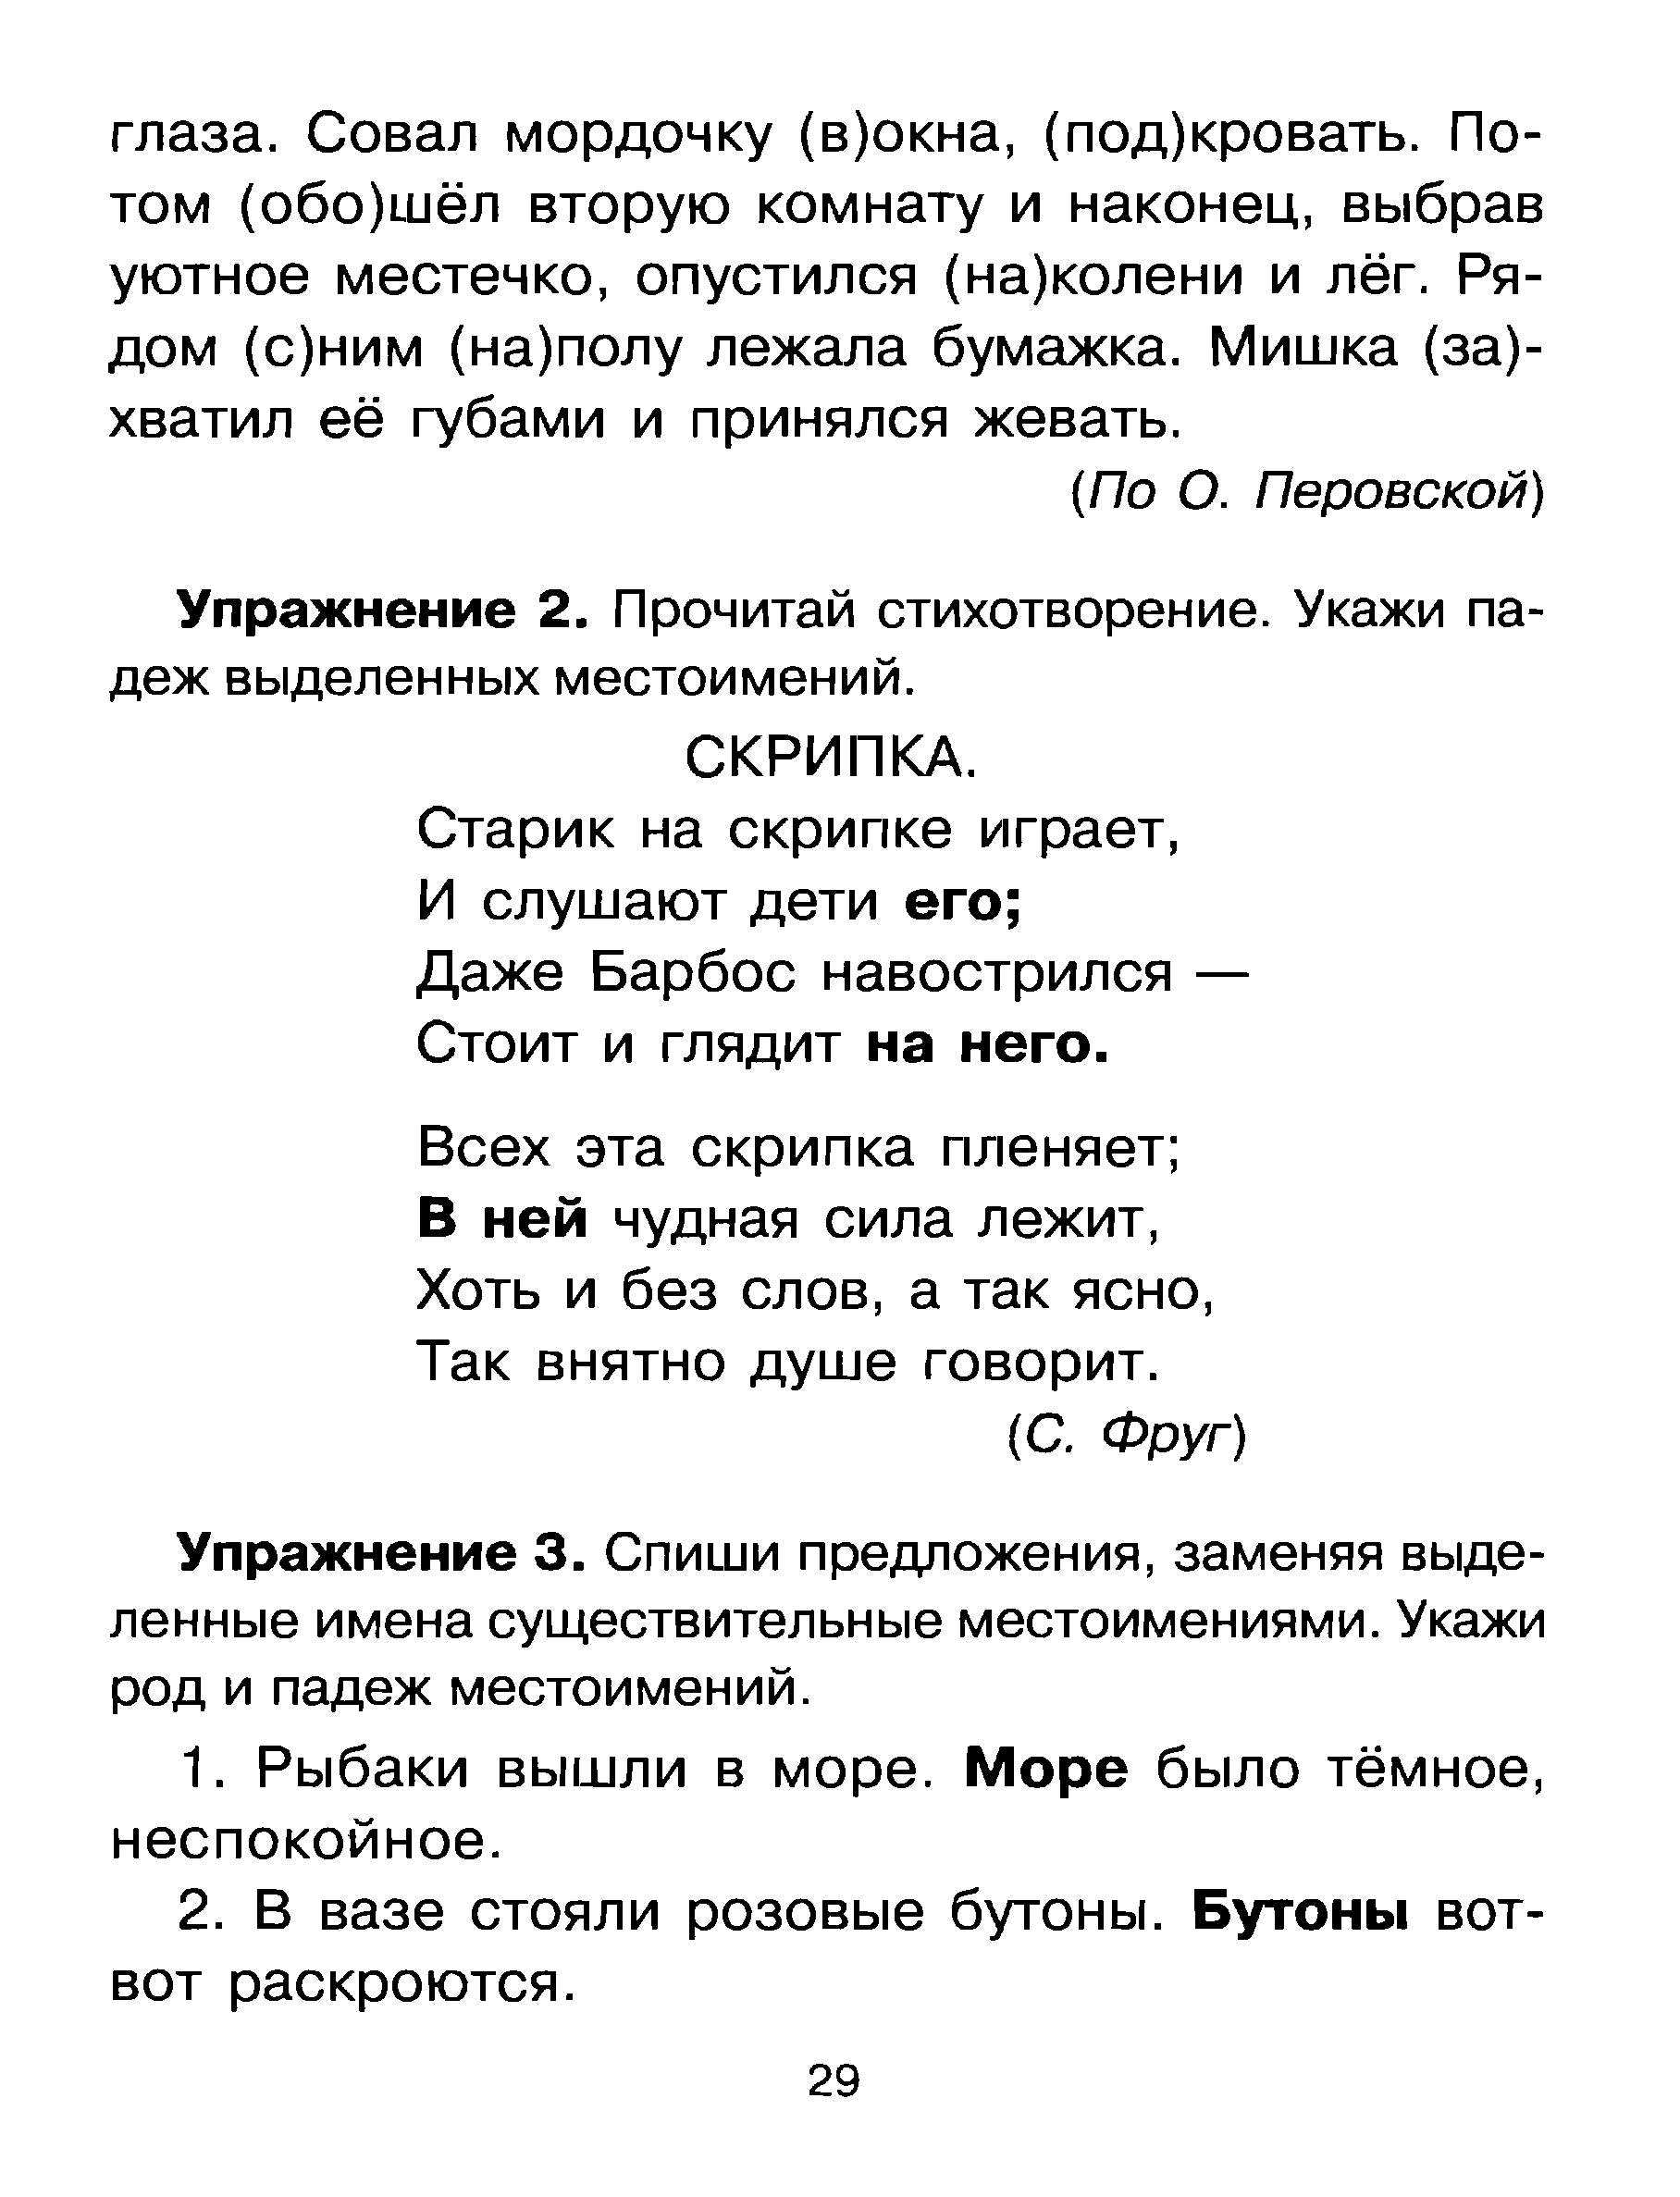 Упражнения на все правила по русскому языку . Автор О. Д. Узорова